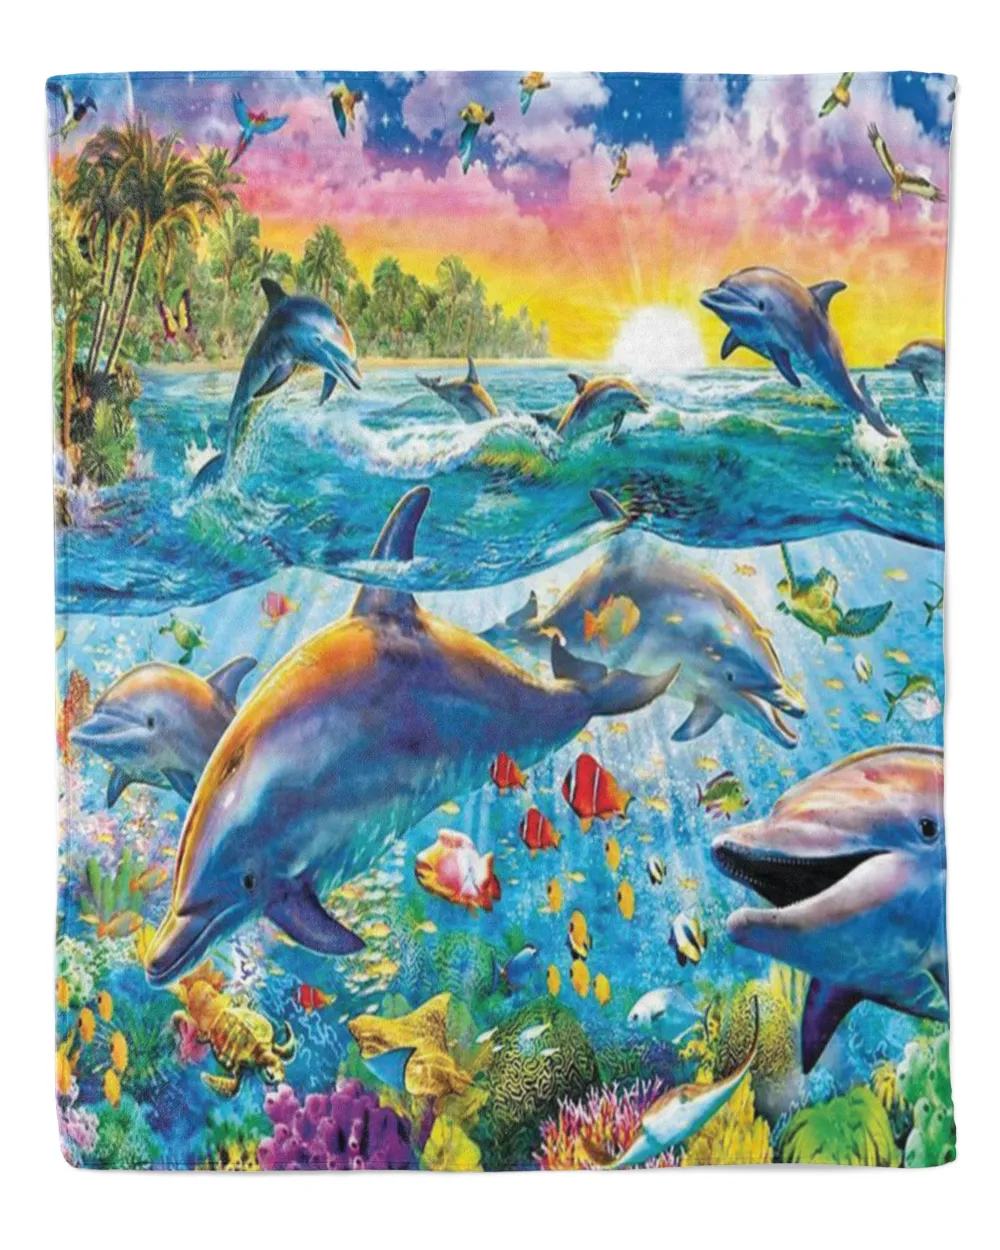 Dolphin under the ocean